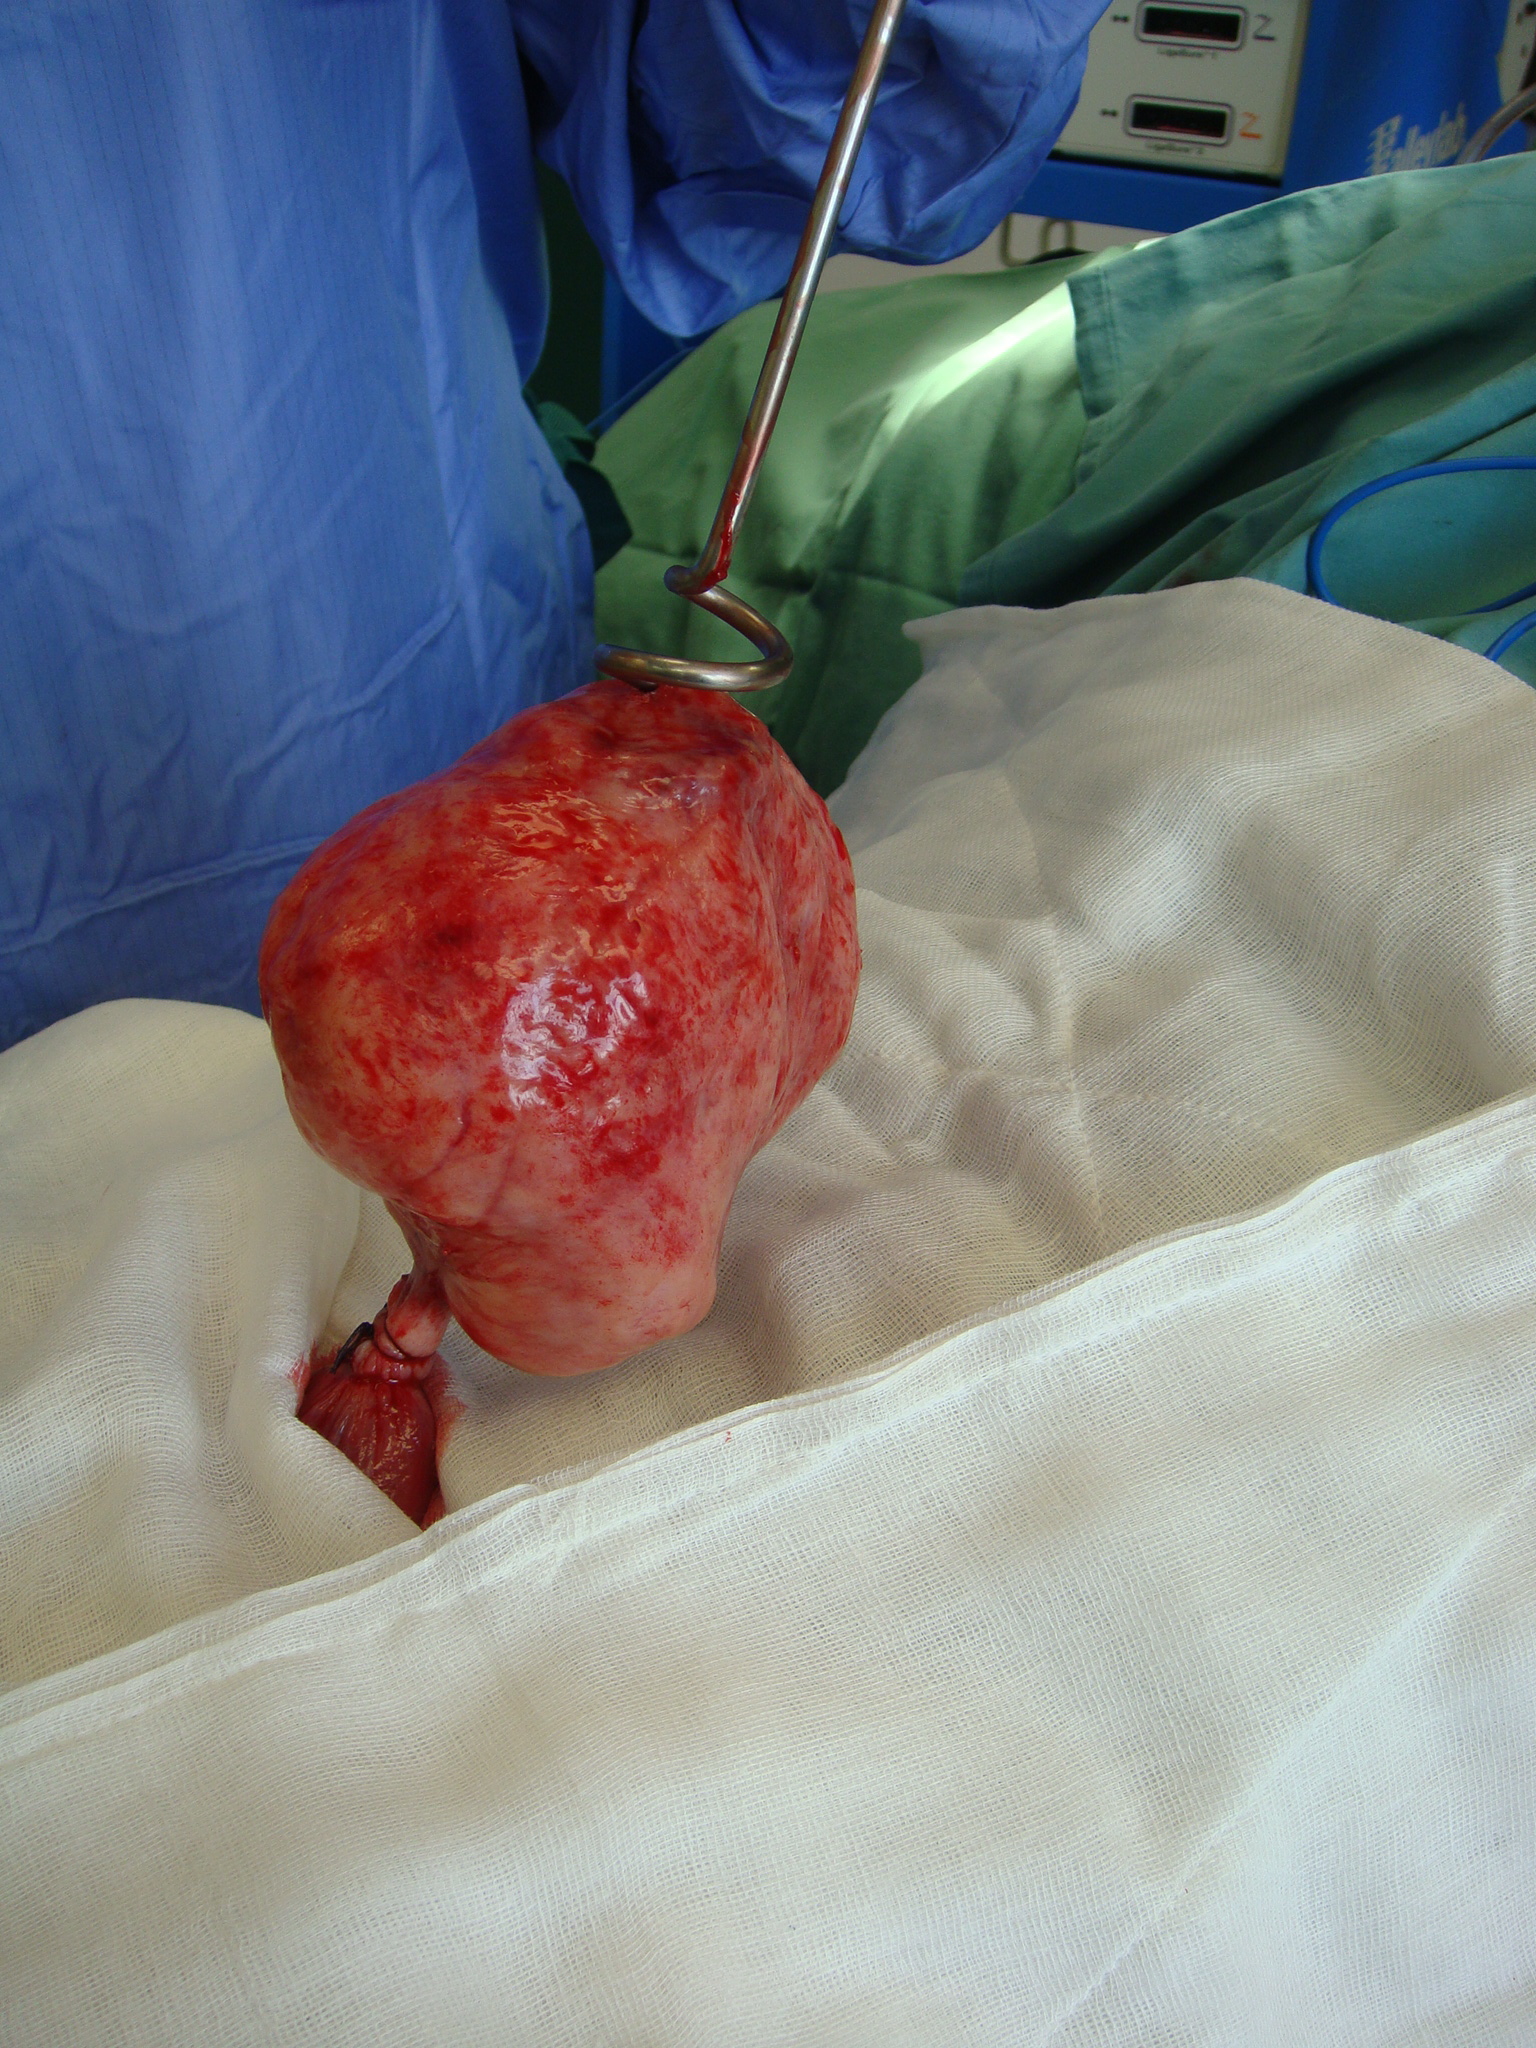 fibroid myomectomy pedunculated